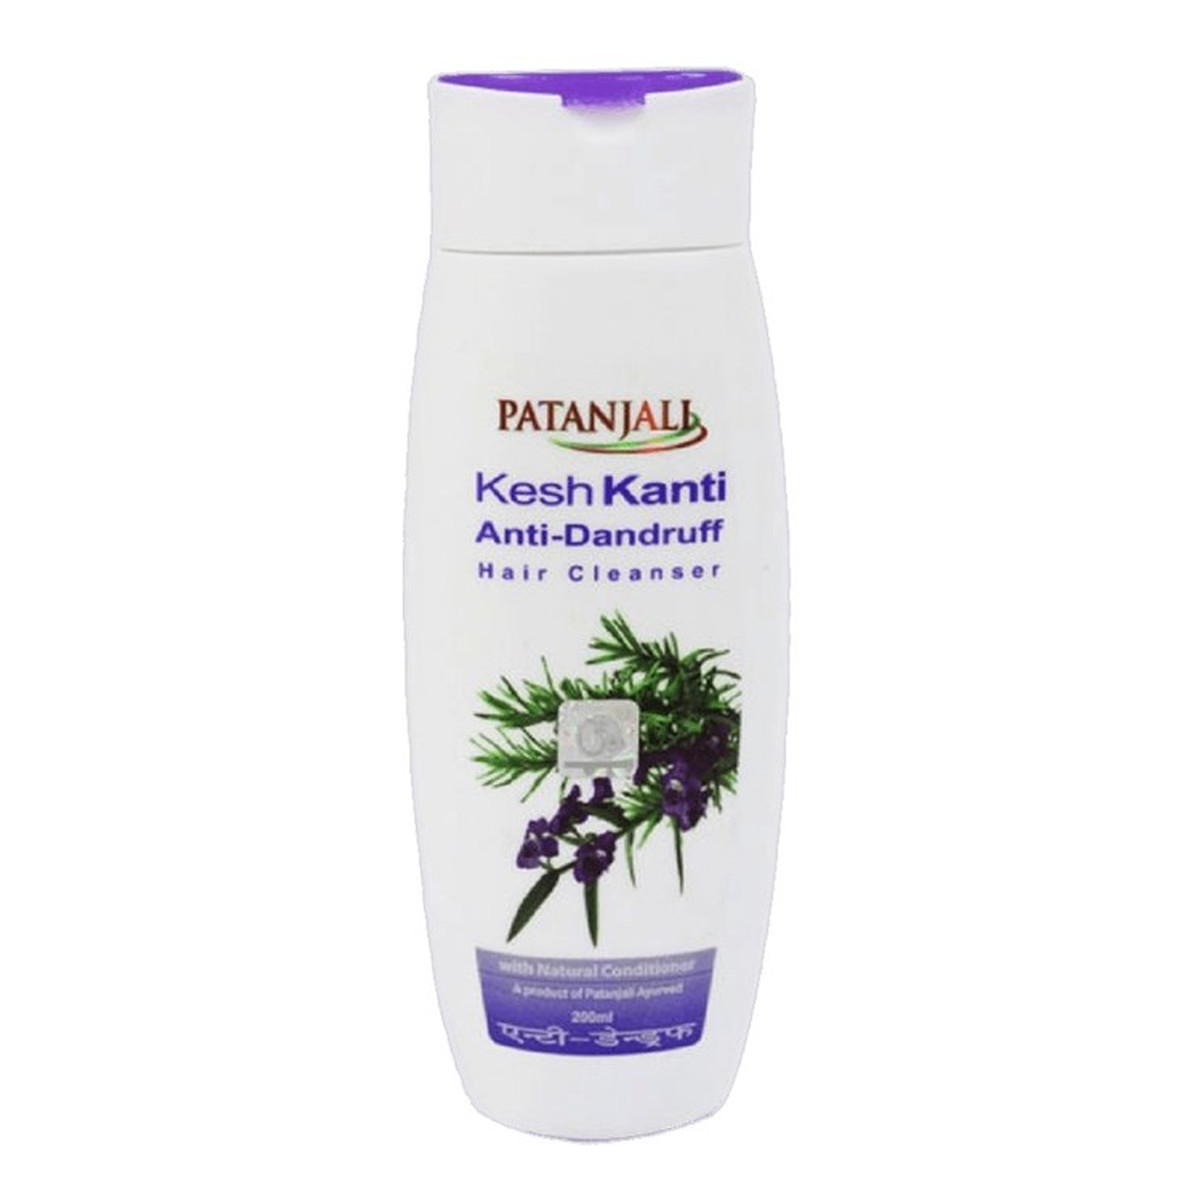 Patanjali Ajuwerdyjski szampon równoważący Anti-Dandurff 200ml